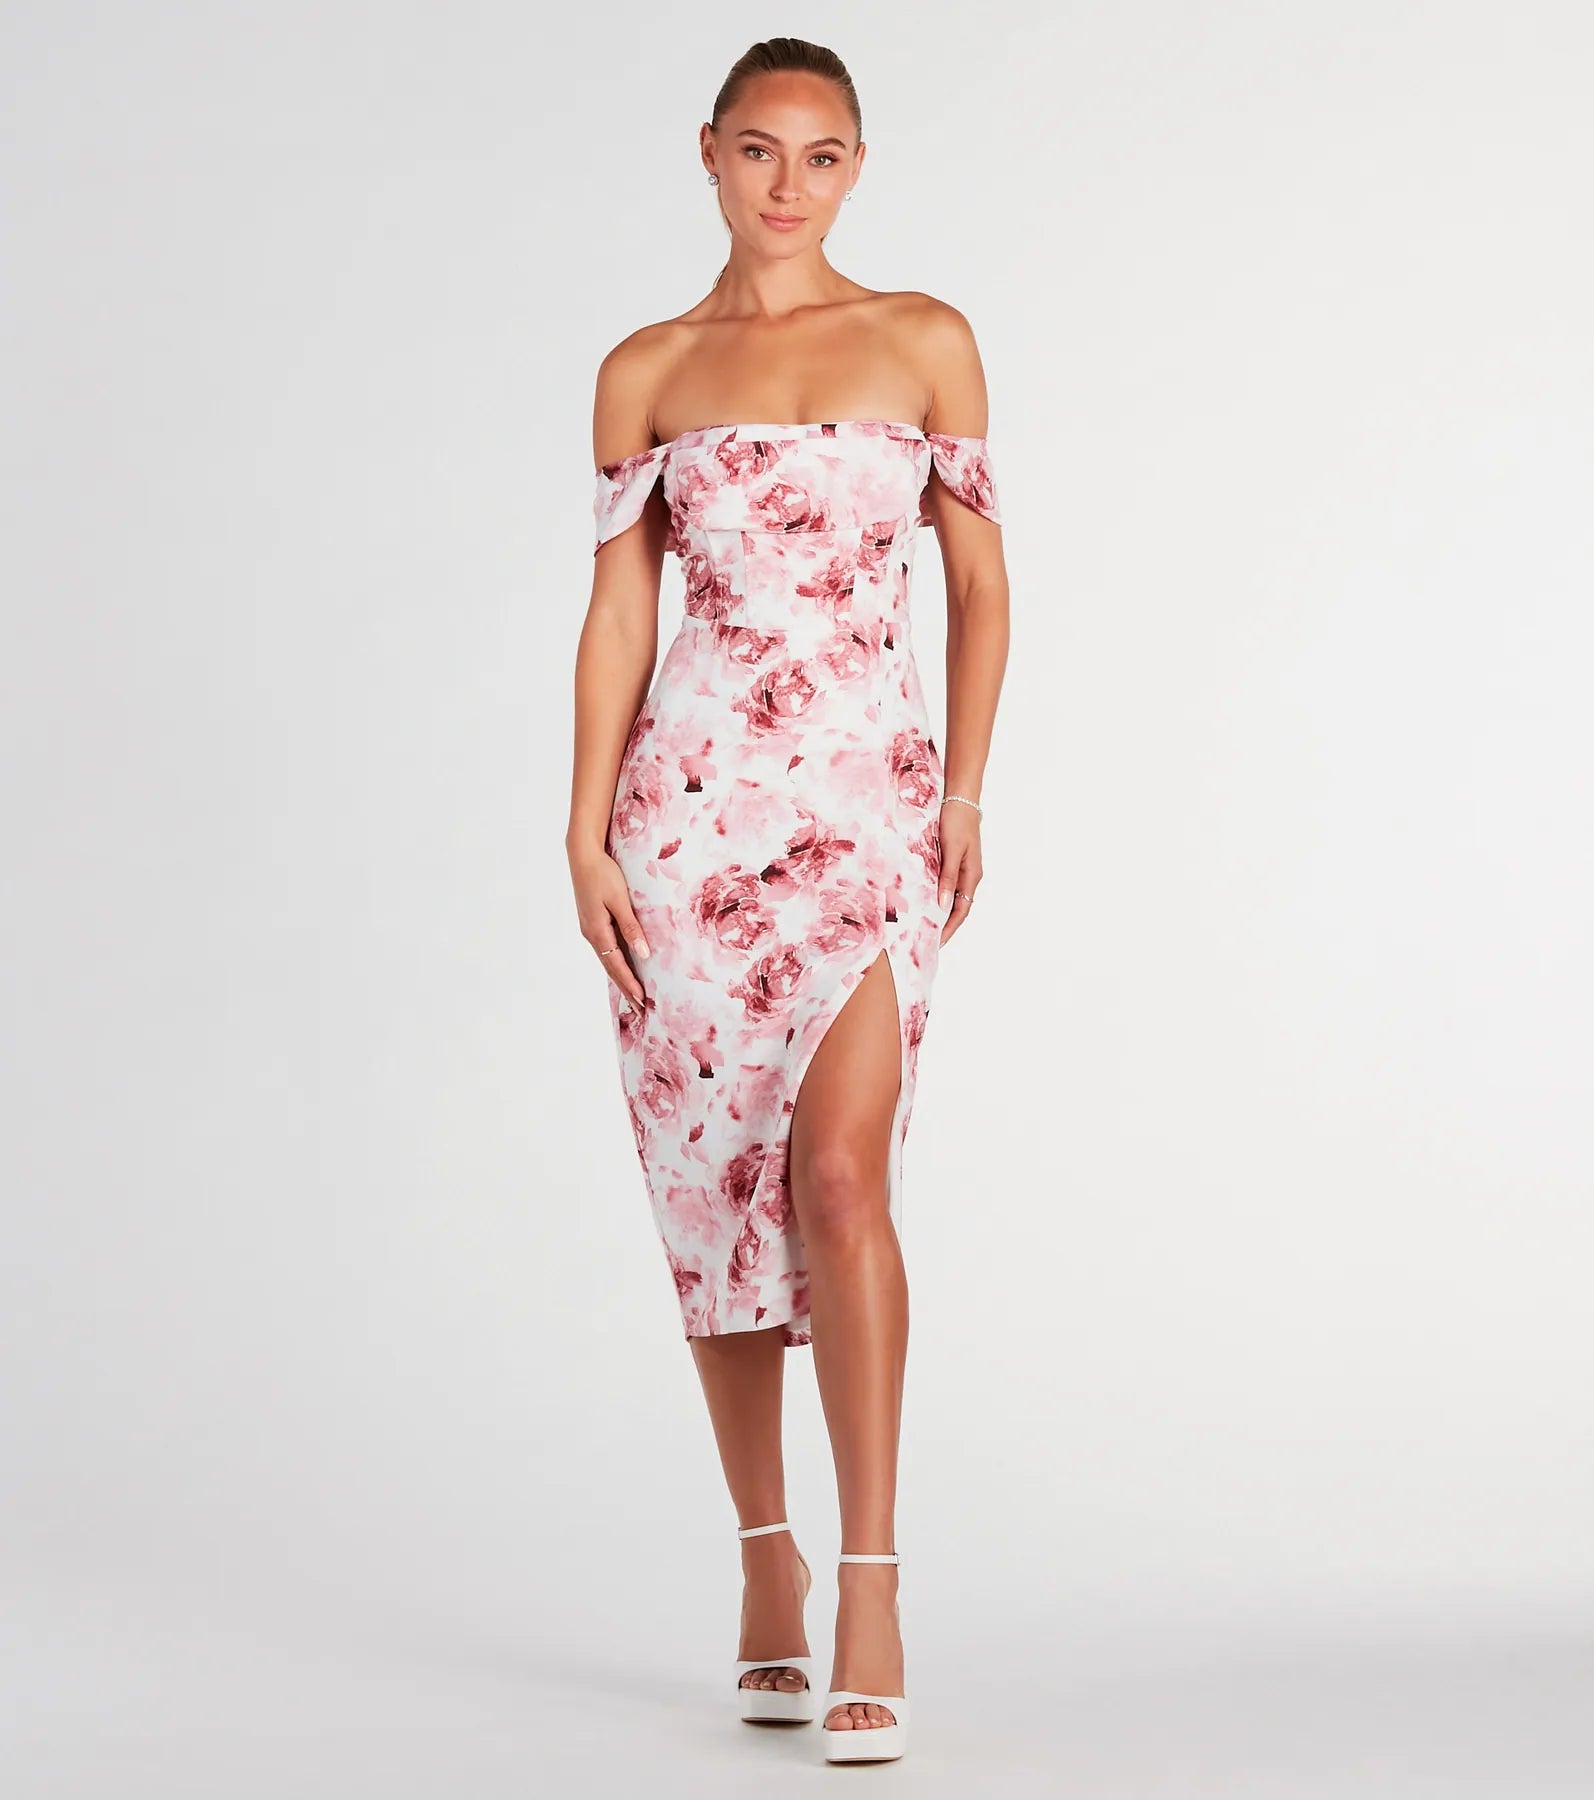 Floral Print Cowl Neck Back Zipper Slit Short Sleeves Sleeves Off the Shoulder Skater Dress/Party Dress/Midi Dress